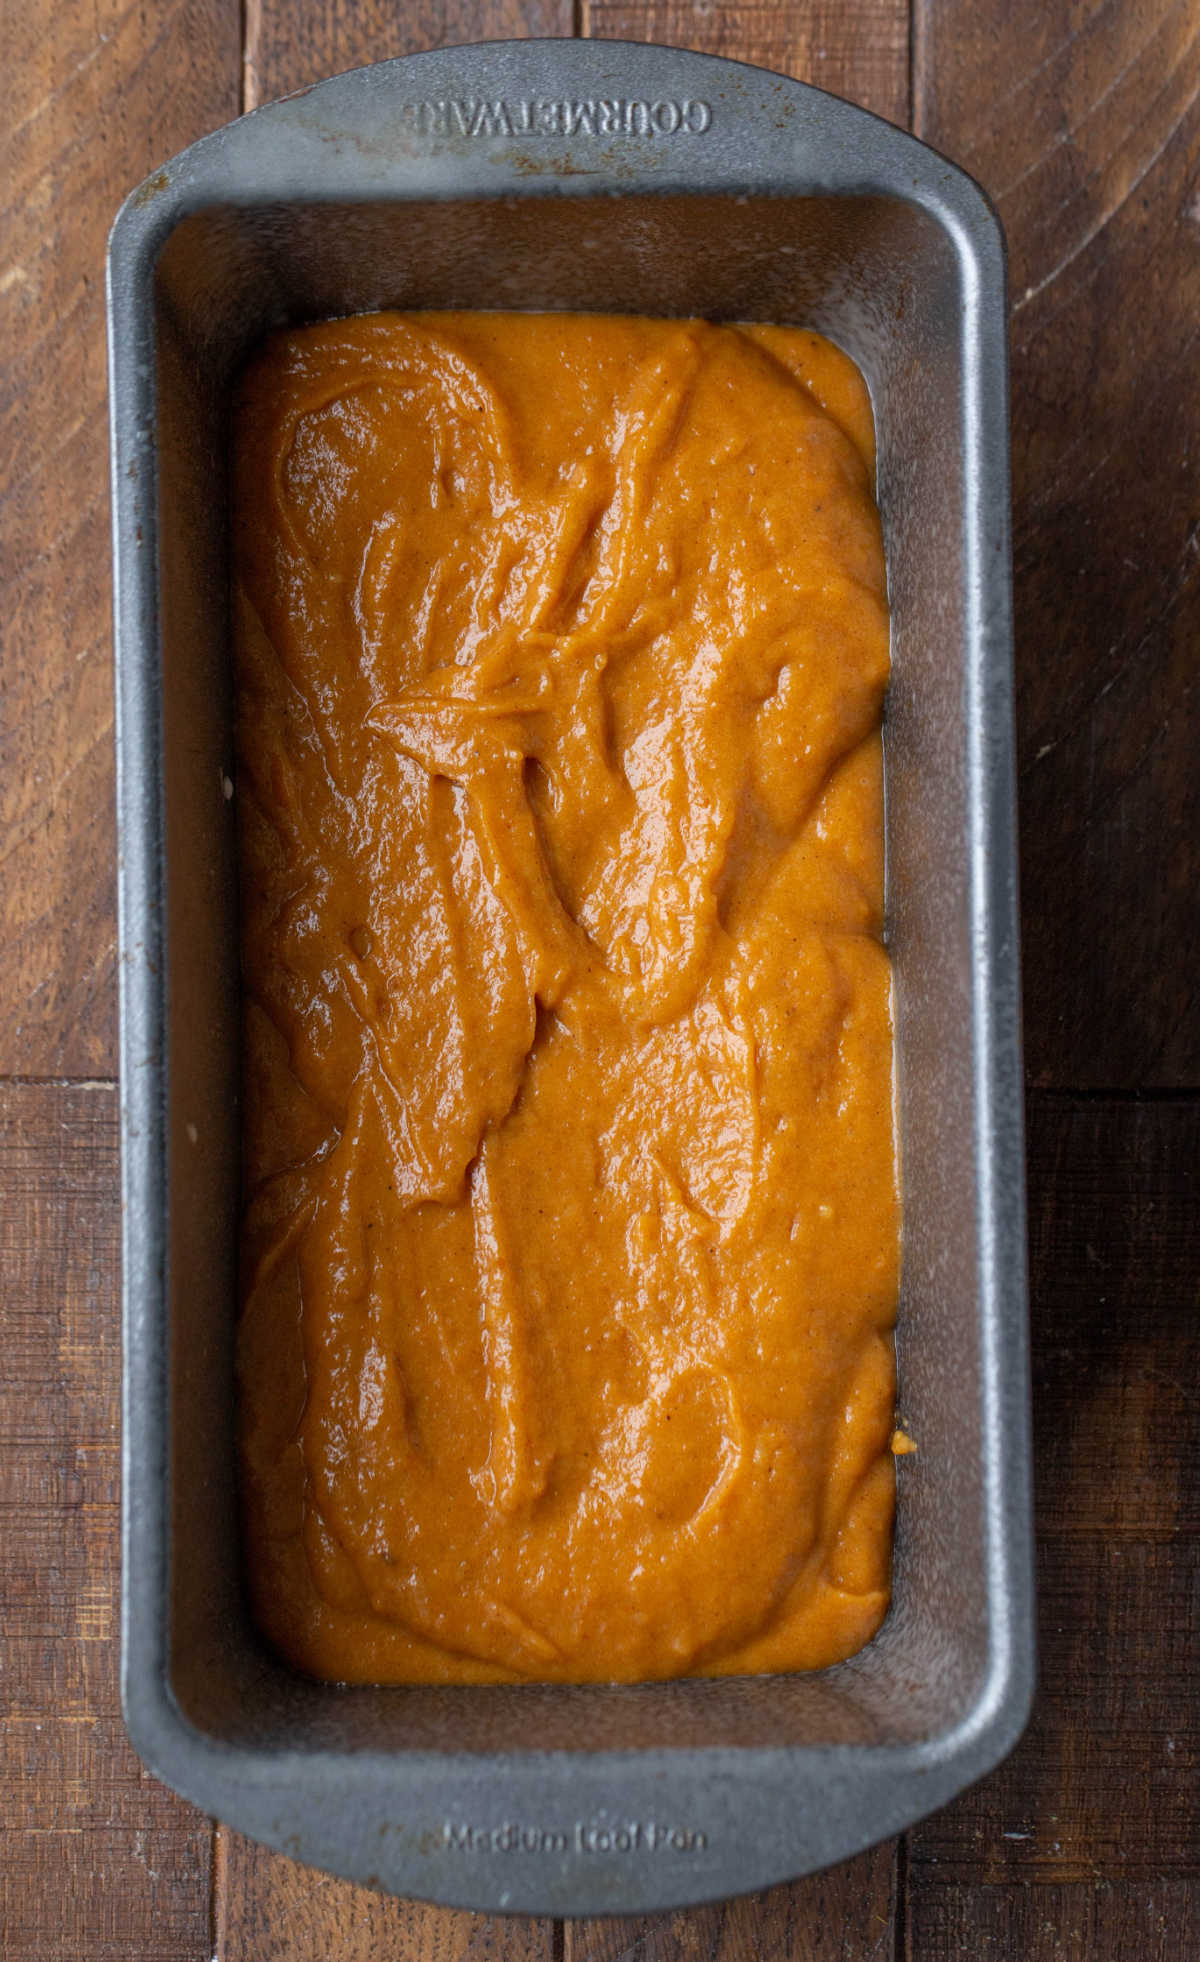 Pumpkin bread batter in a silver bread pan.